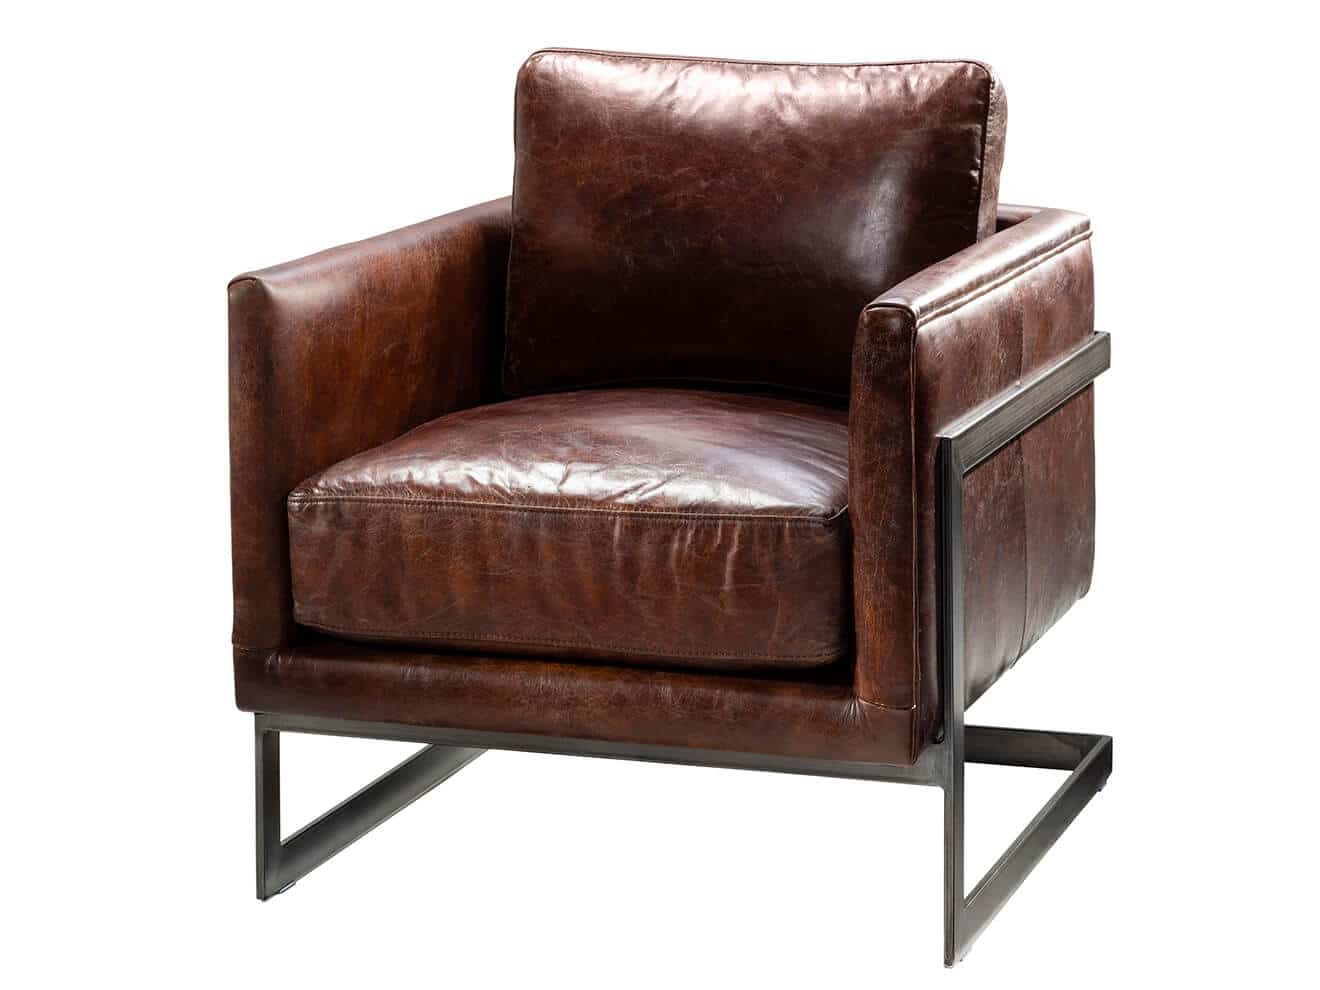 CECH-012 Atherton Chair